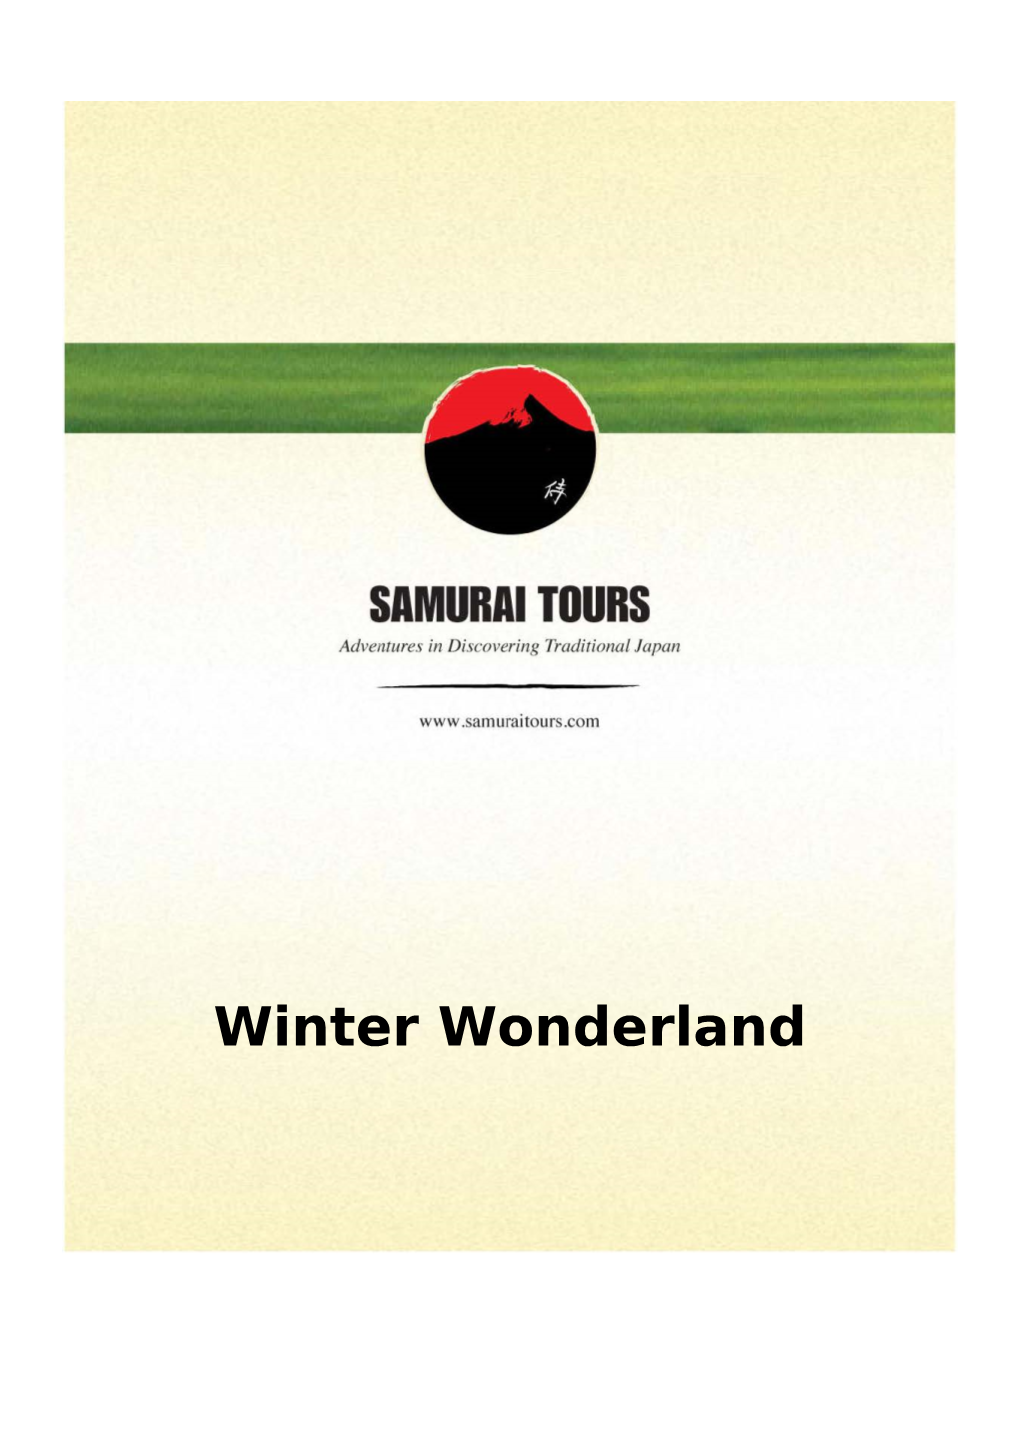 Winter Wonderland 15 Days / 14 Nights Winter Wonderland